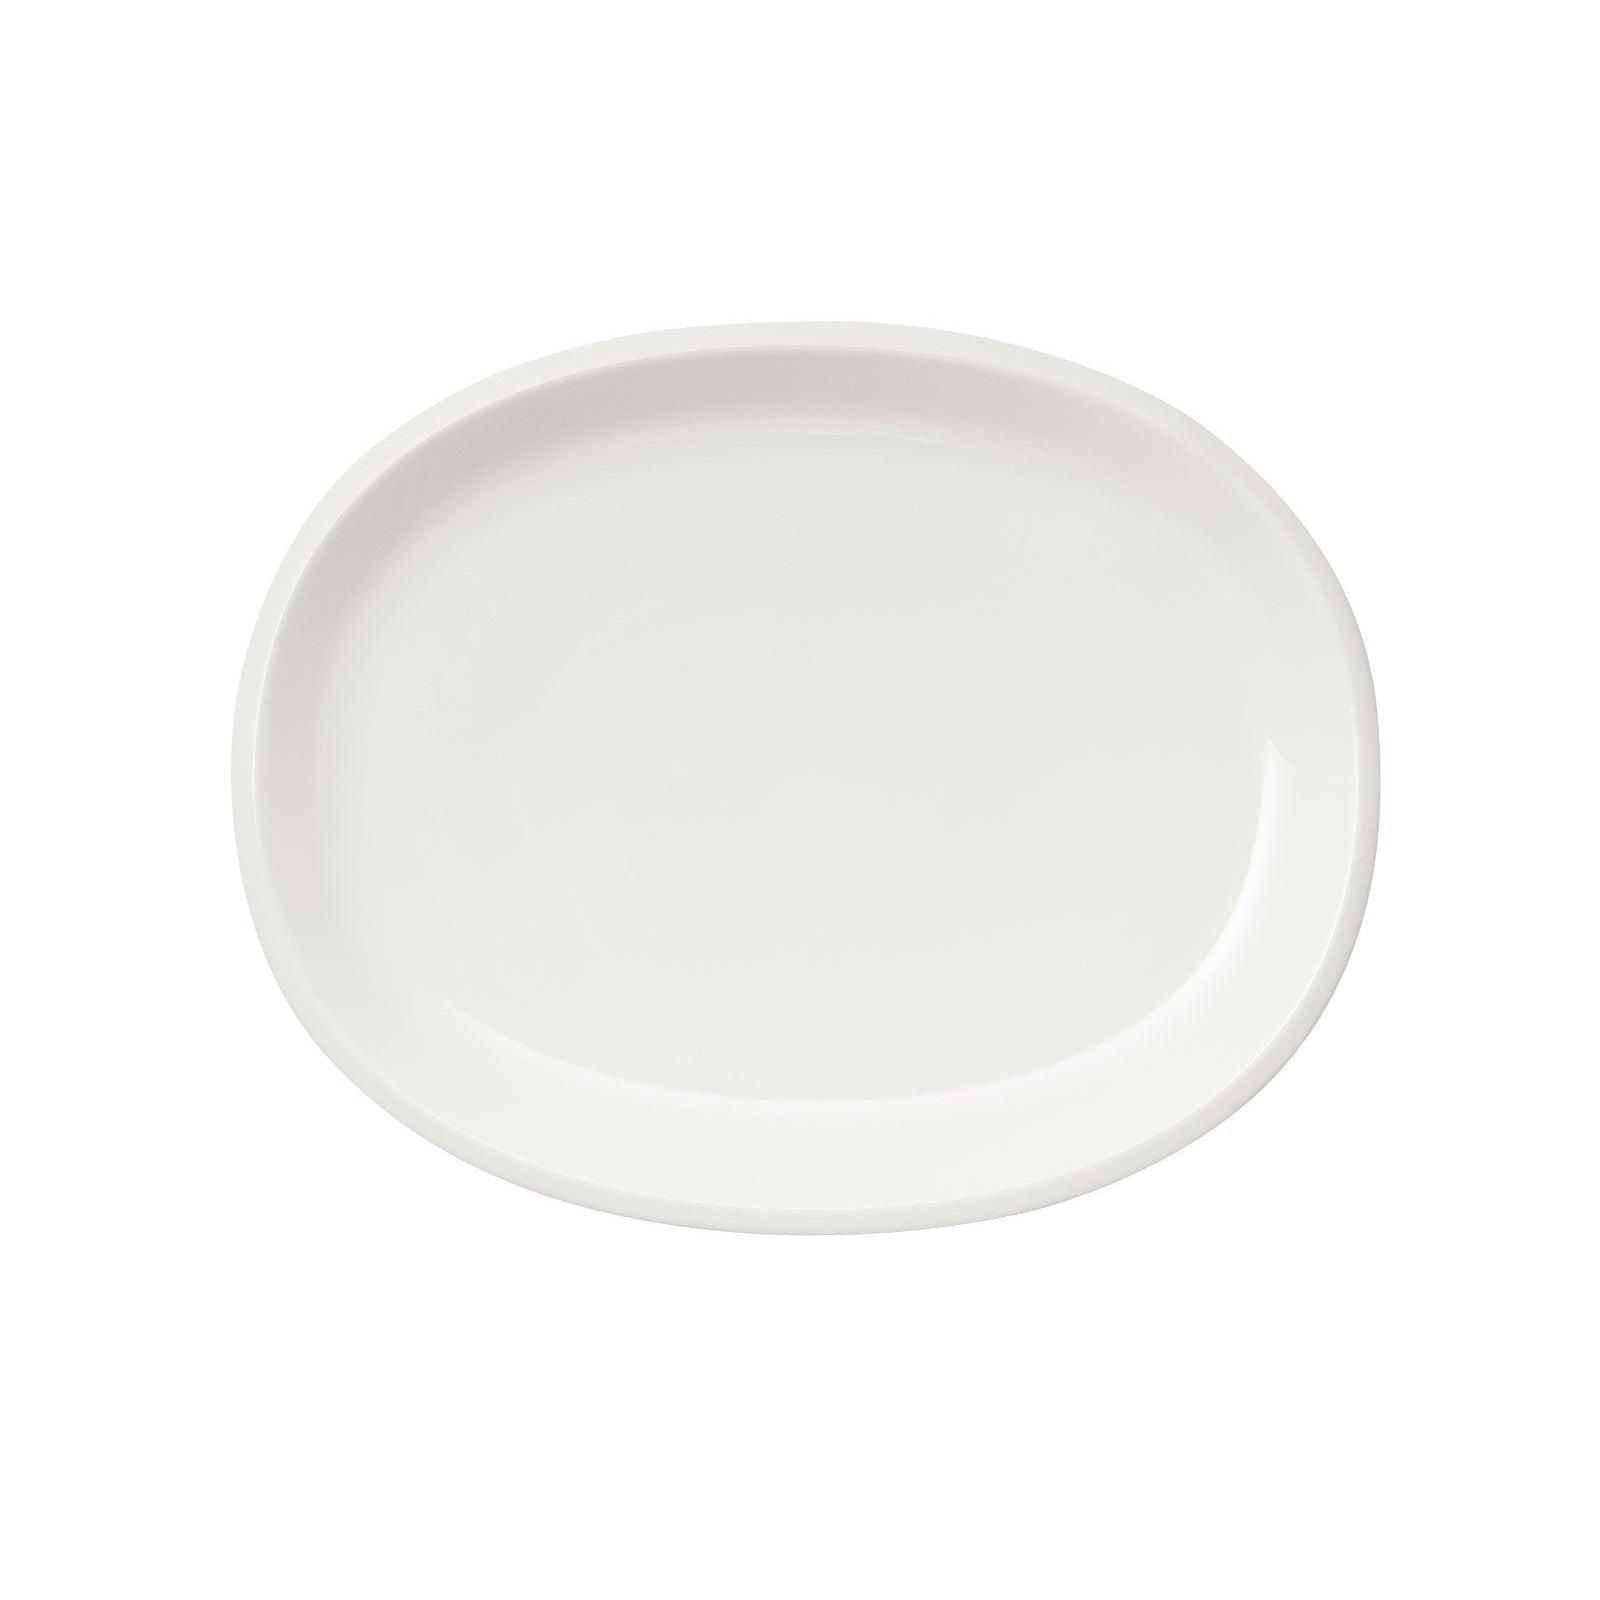 Iittala Raami serwująca talerz biały, 35 cm